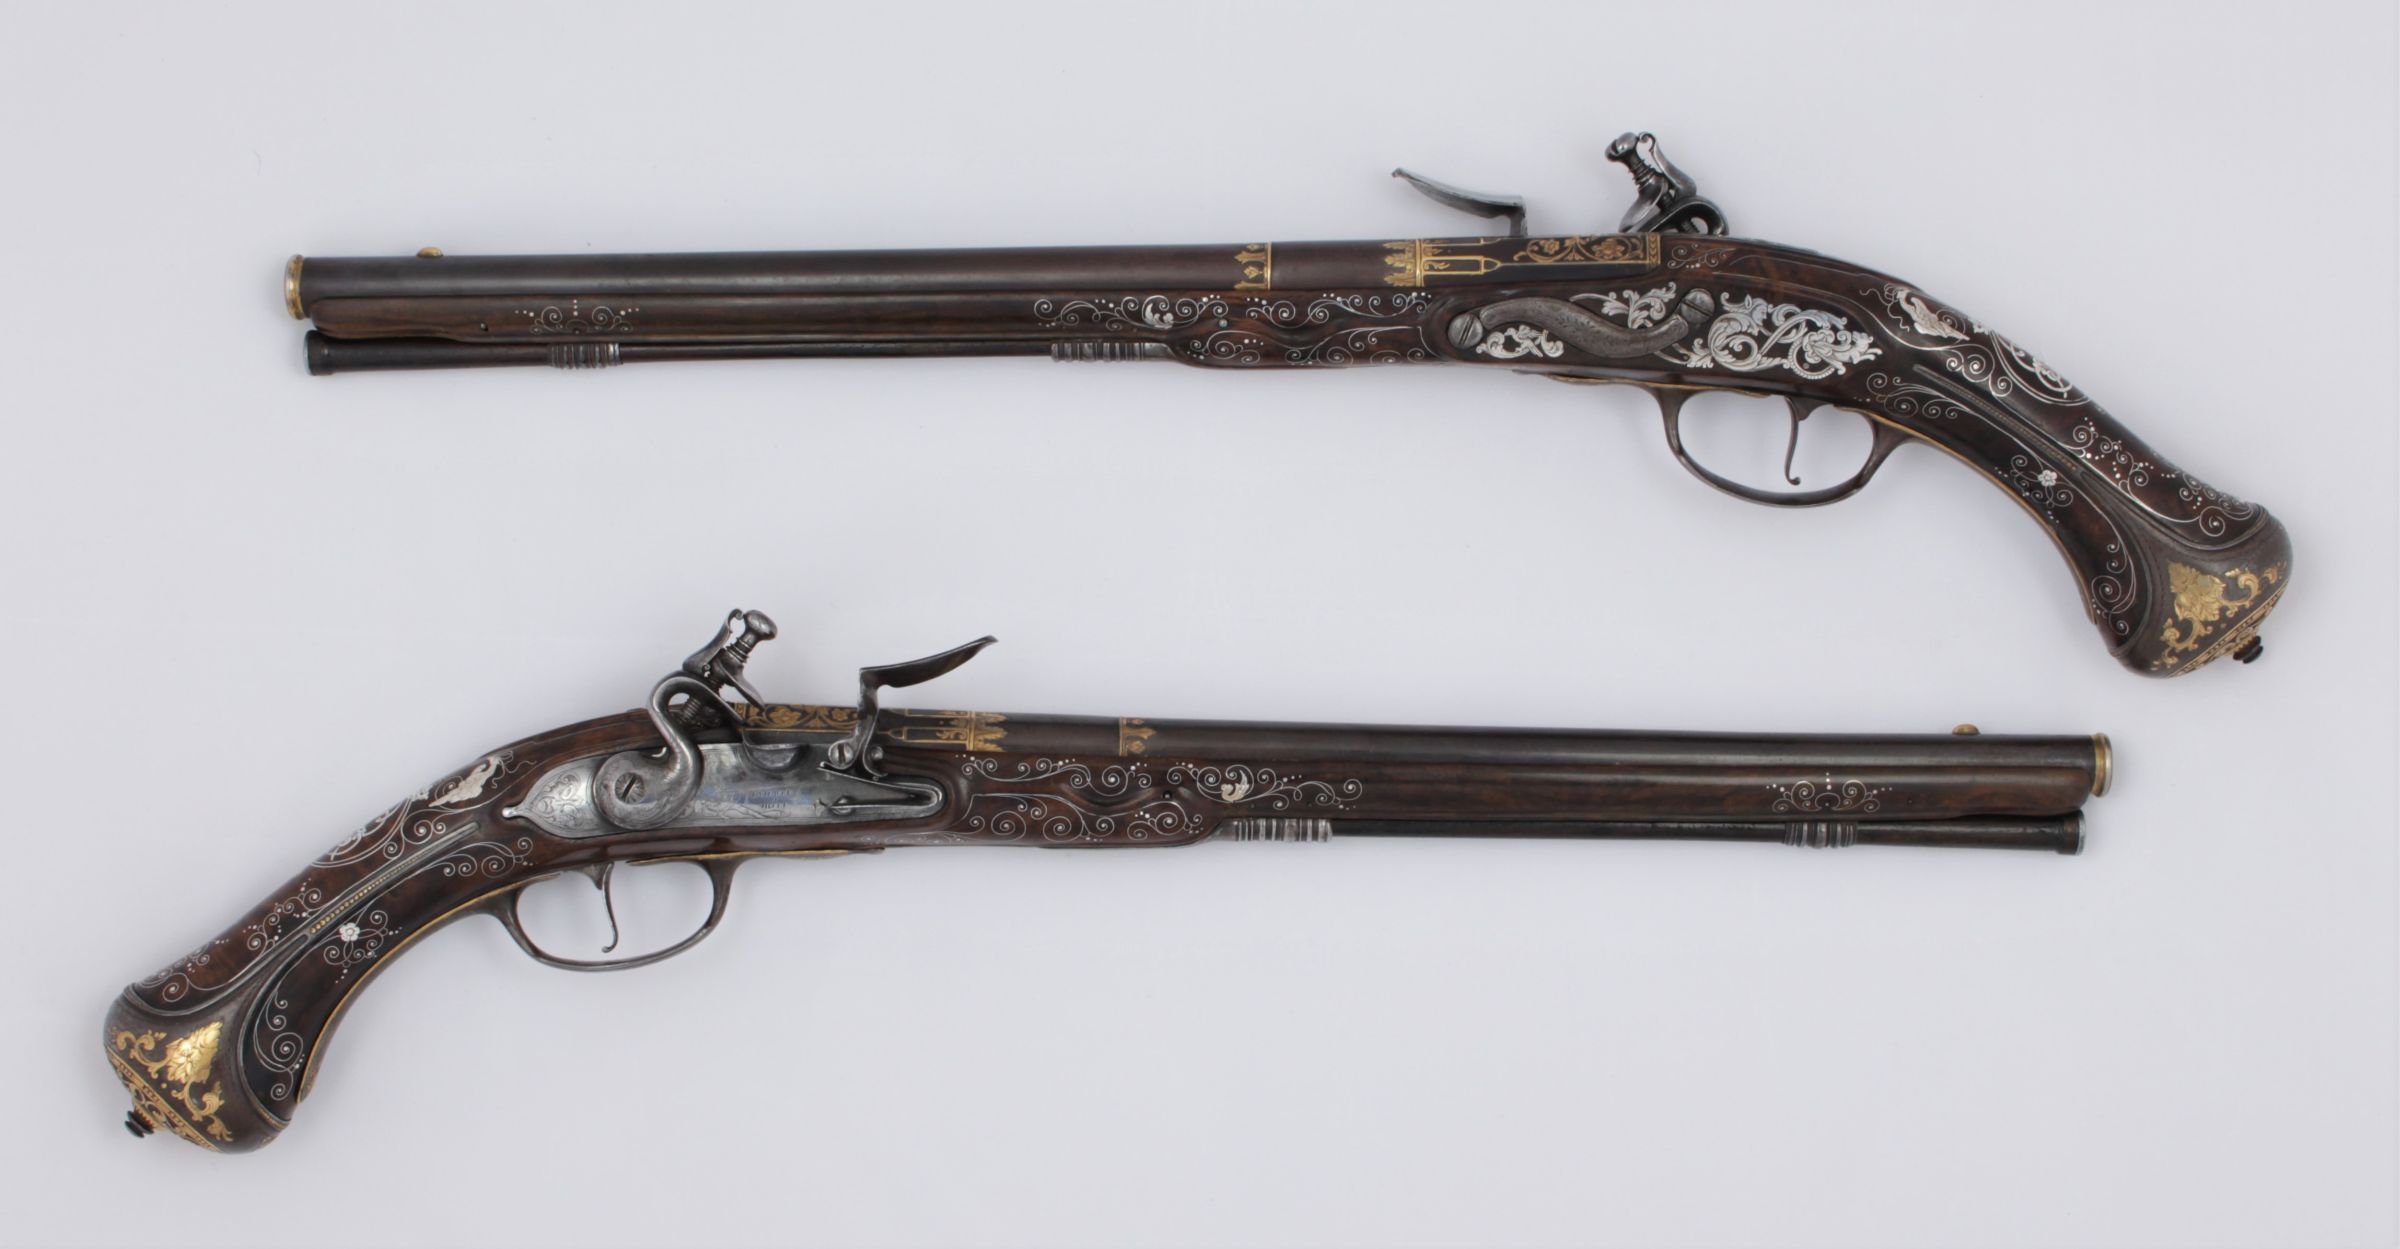 Párové křesadlové pistole LA MARRE A VIENNE - vyrobeno 1680 pro Ernsta Augusta ( 1629 - 1698 )